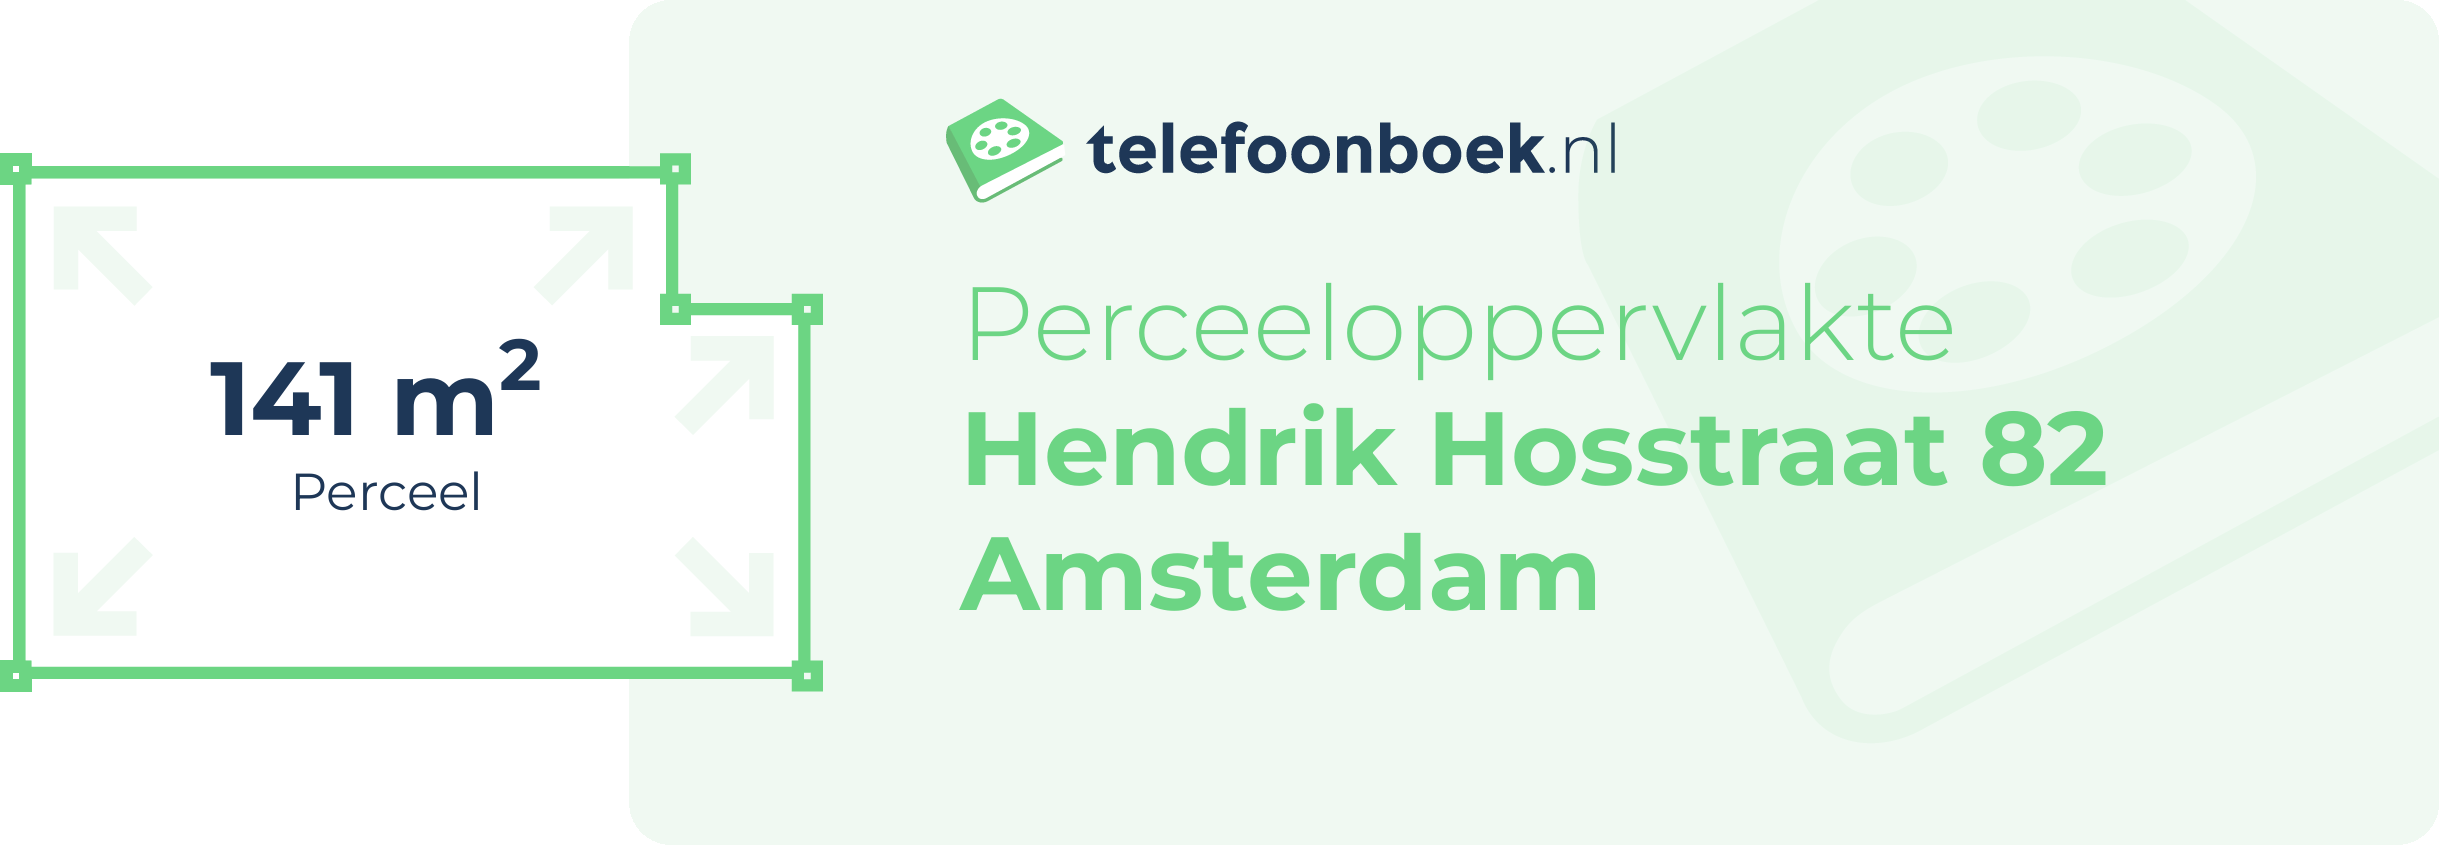 Perceeloppervlakte Hendrik Hosstraat 82 Amsterdam